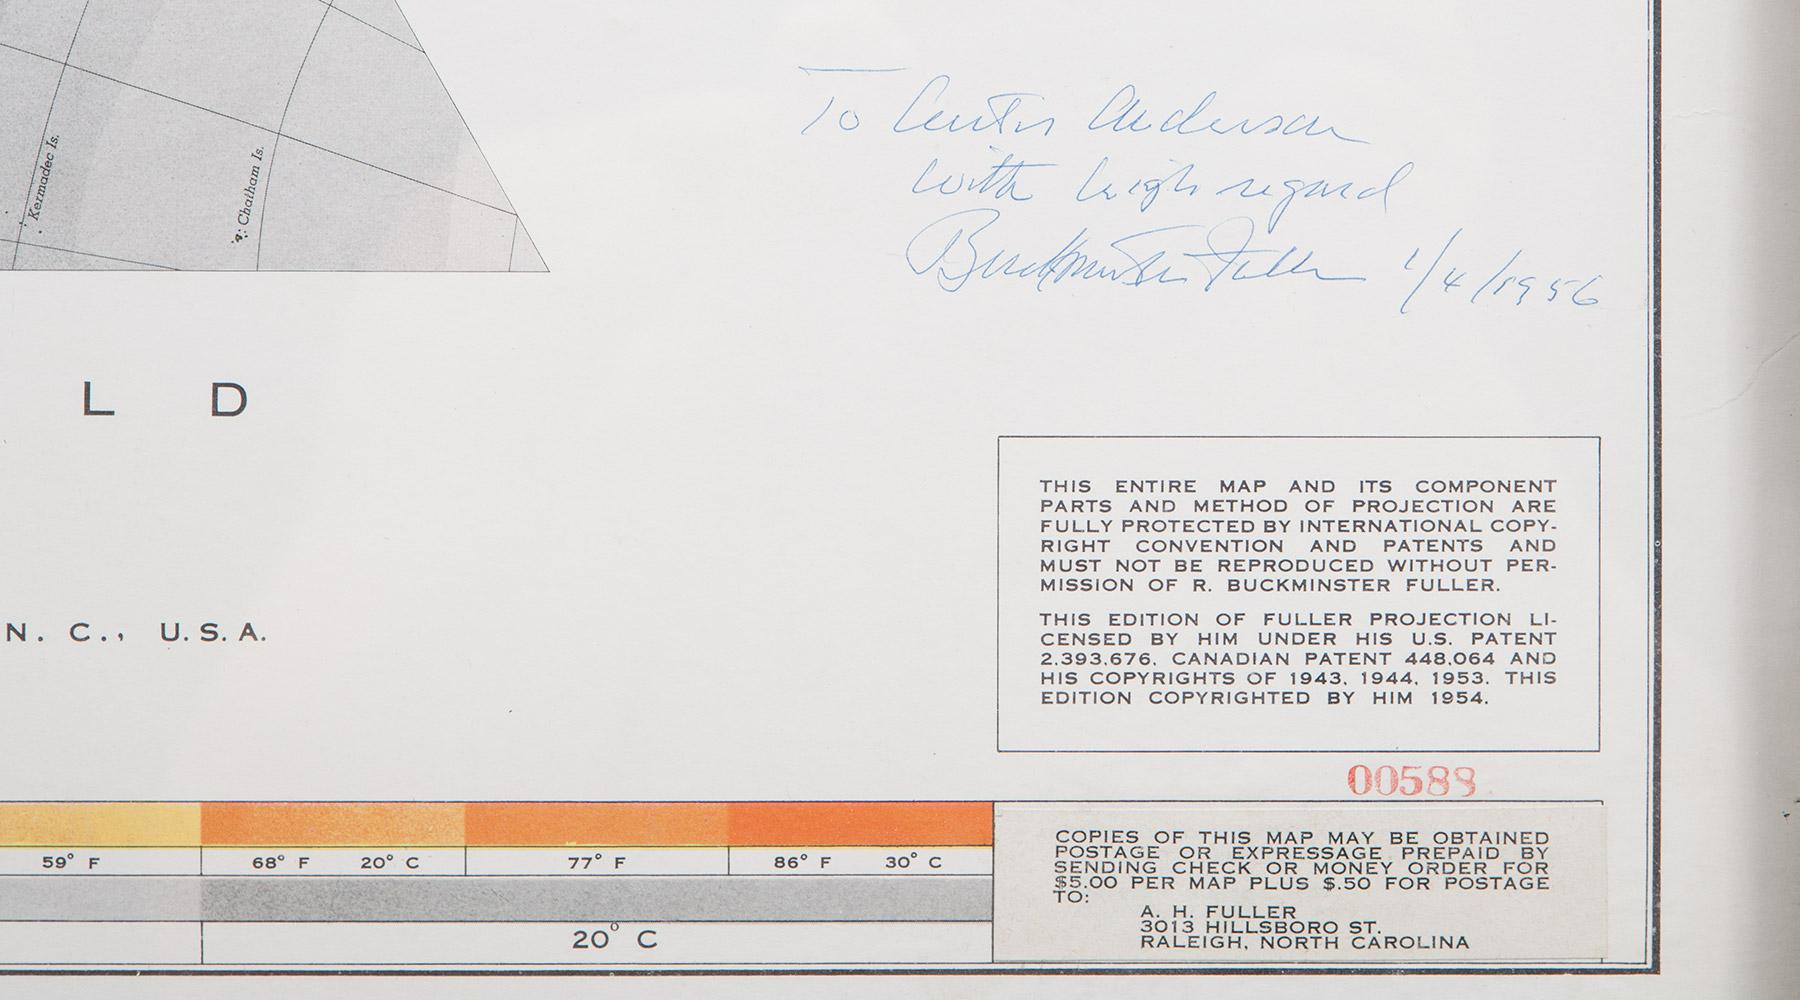 Die Dymaxion Air-Ocean World Map ist eine Lithografie von Buckminster Fuller. Neunundzwanzigfarbiger Siebdruck auf Papier. Das Werk ist unten rechts signiert, datiert und nummeriert: 1956 Buckminster Fuller. Dieses Werk trägt die Nummer 00588 und